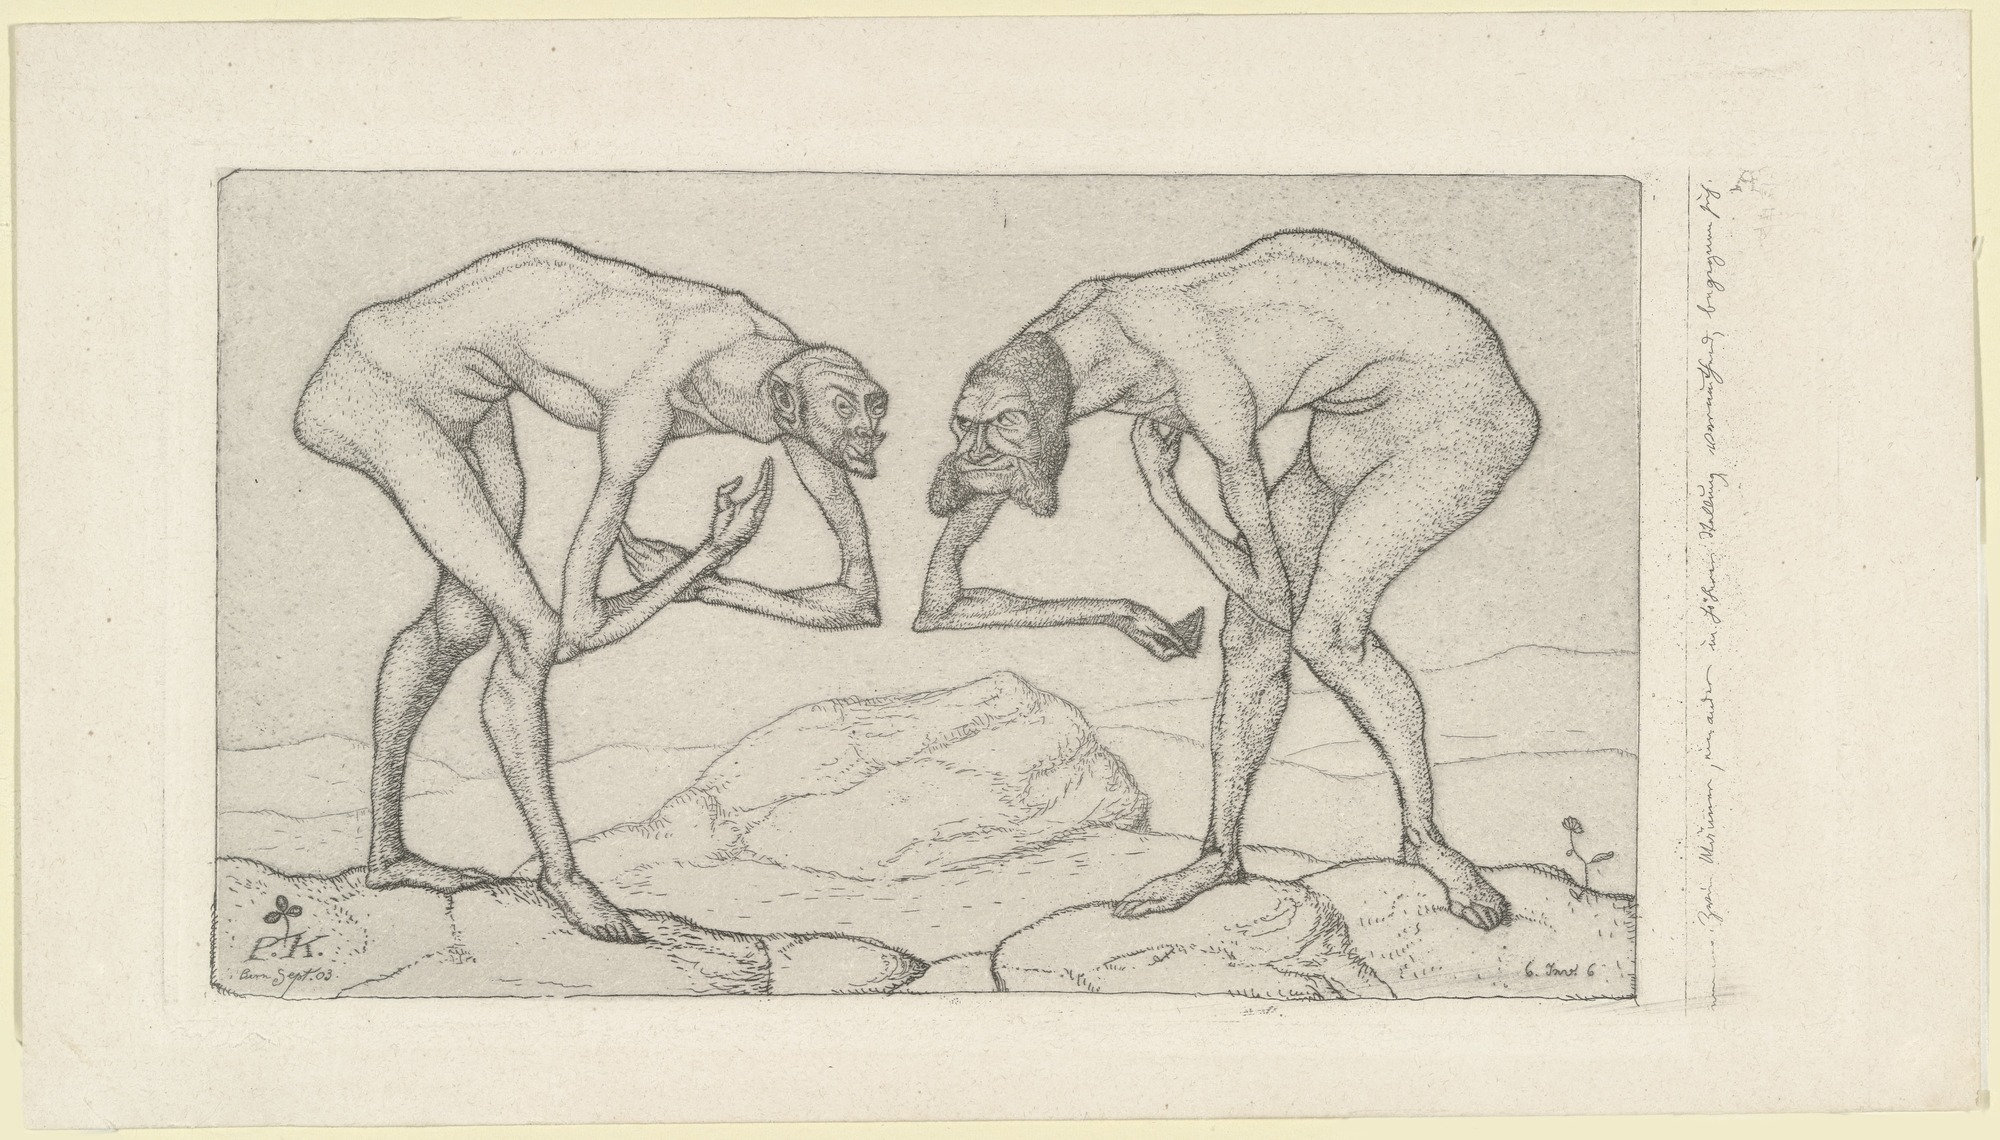 Dva muži se setkají, každý z nich se domnívá, že ten druhý má vyšší postavení by Paul Klee - 1903 - 11,7 x 22,4 cm 